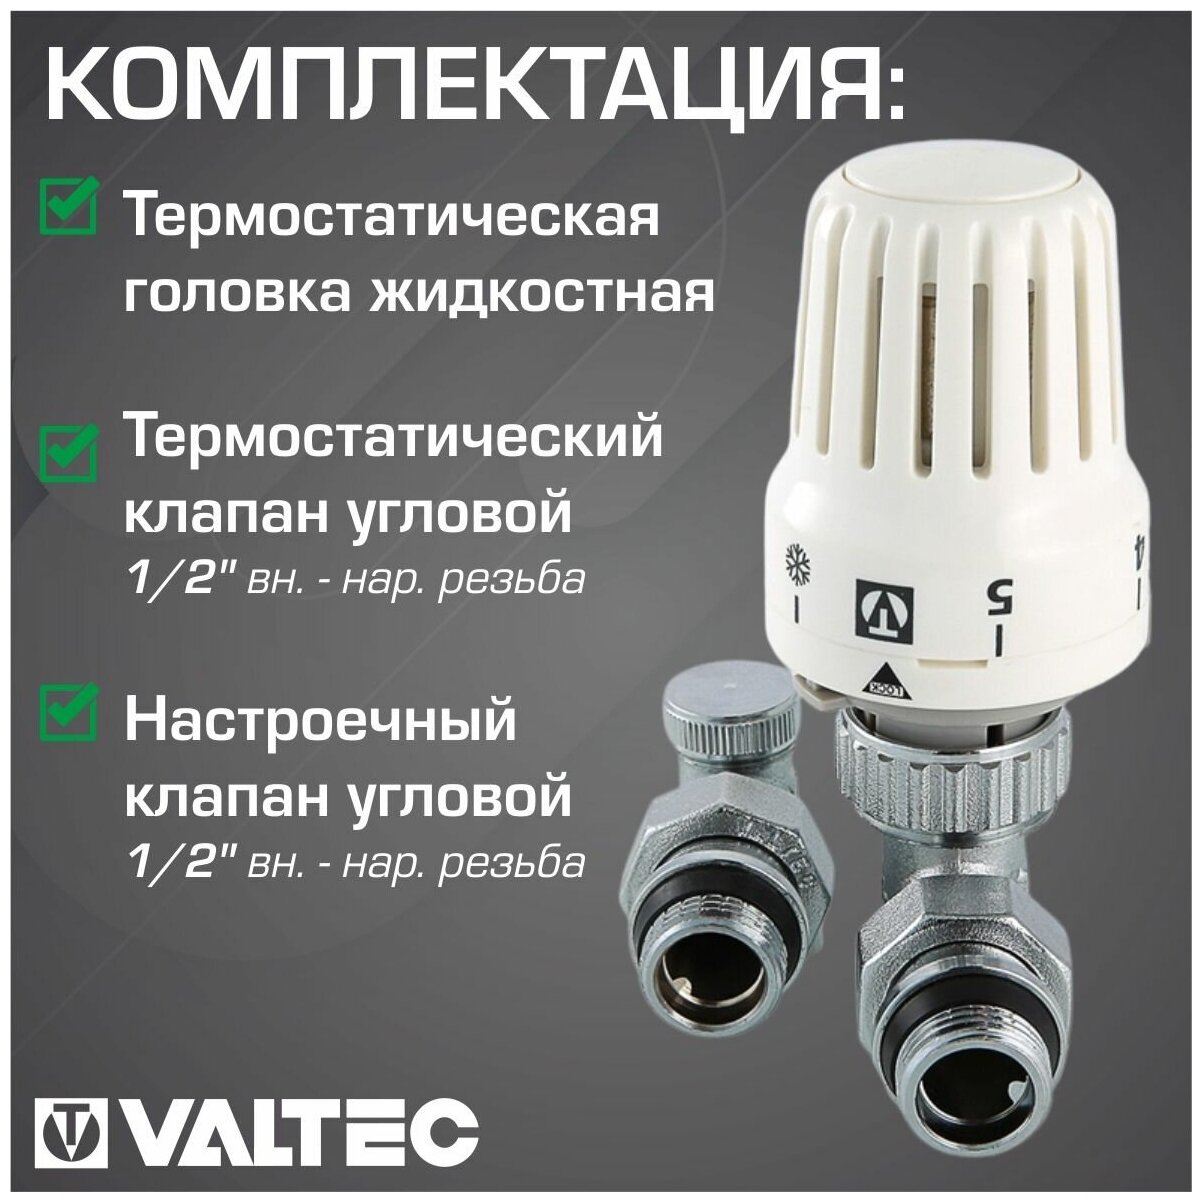 Комплект терморегулирюущего оборудования для радиатора Valtec - фото №7